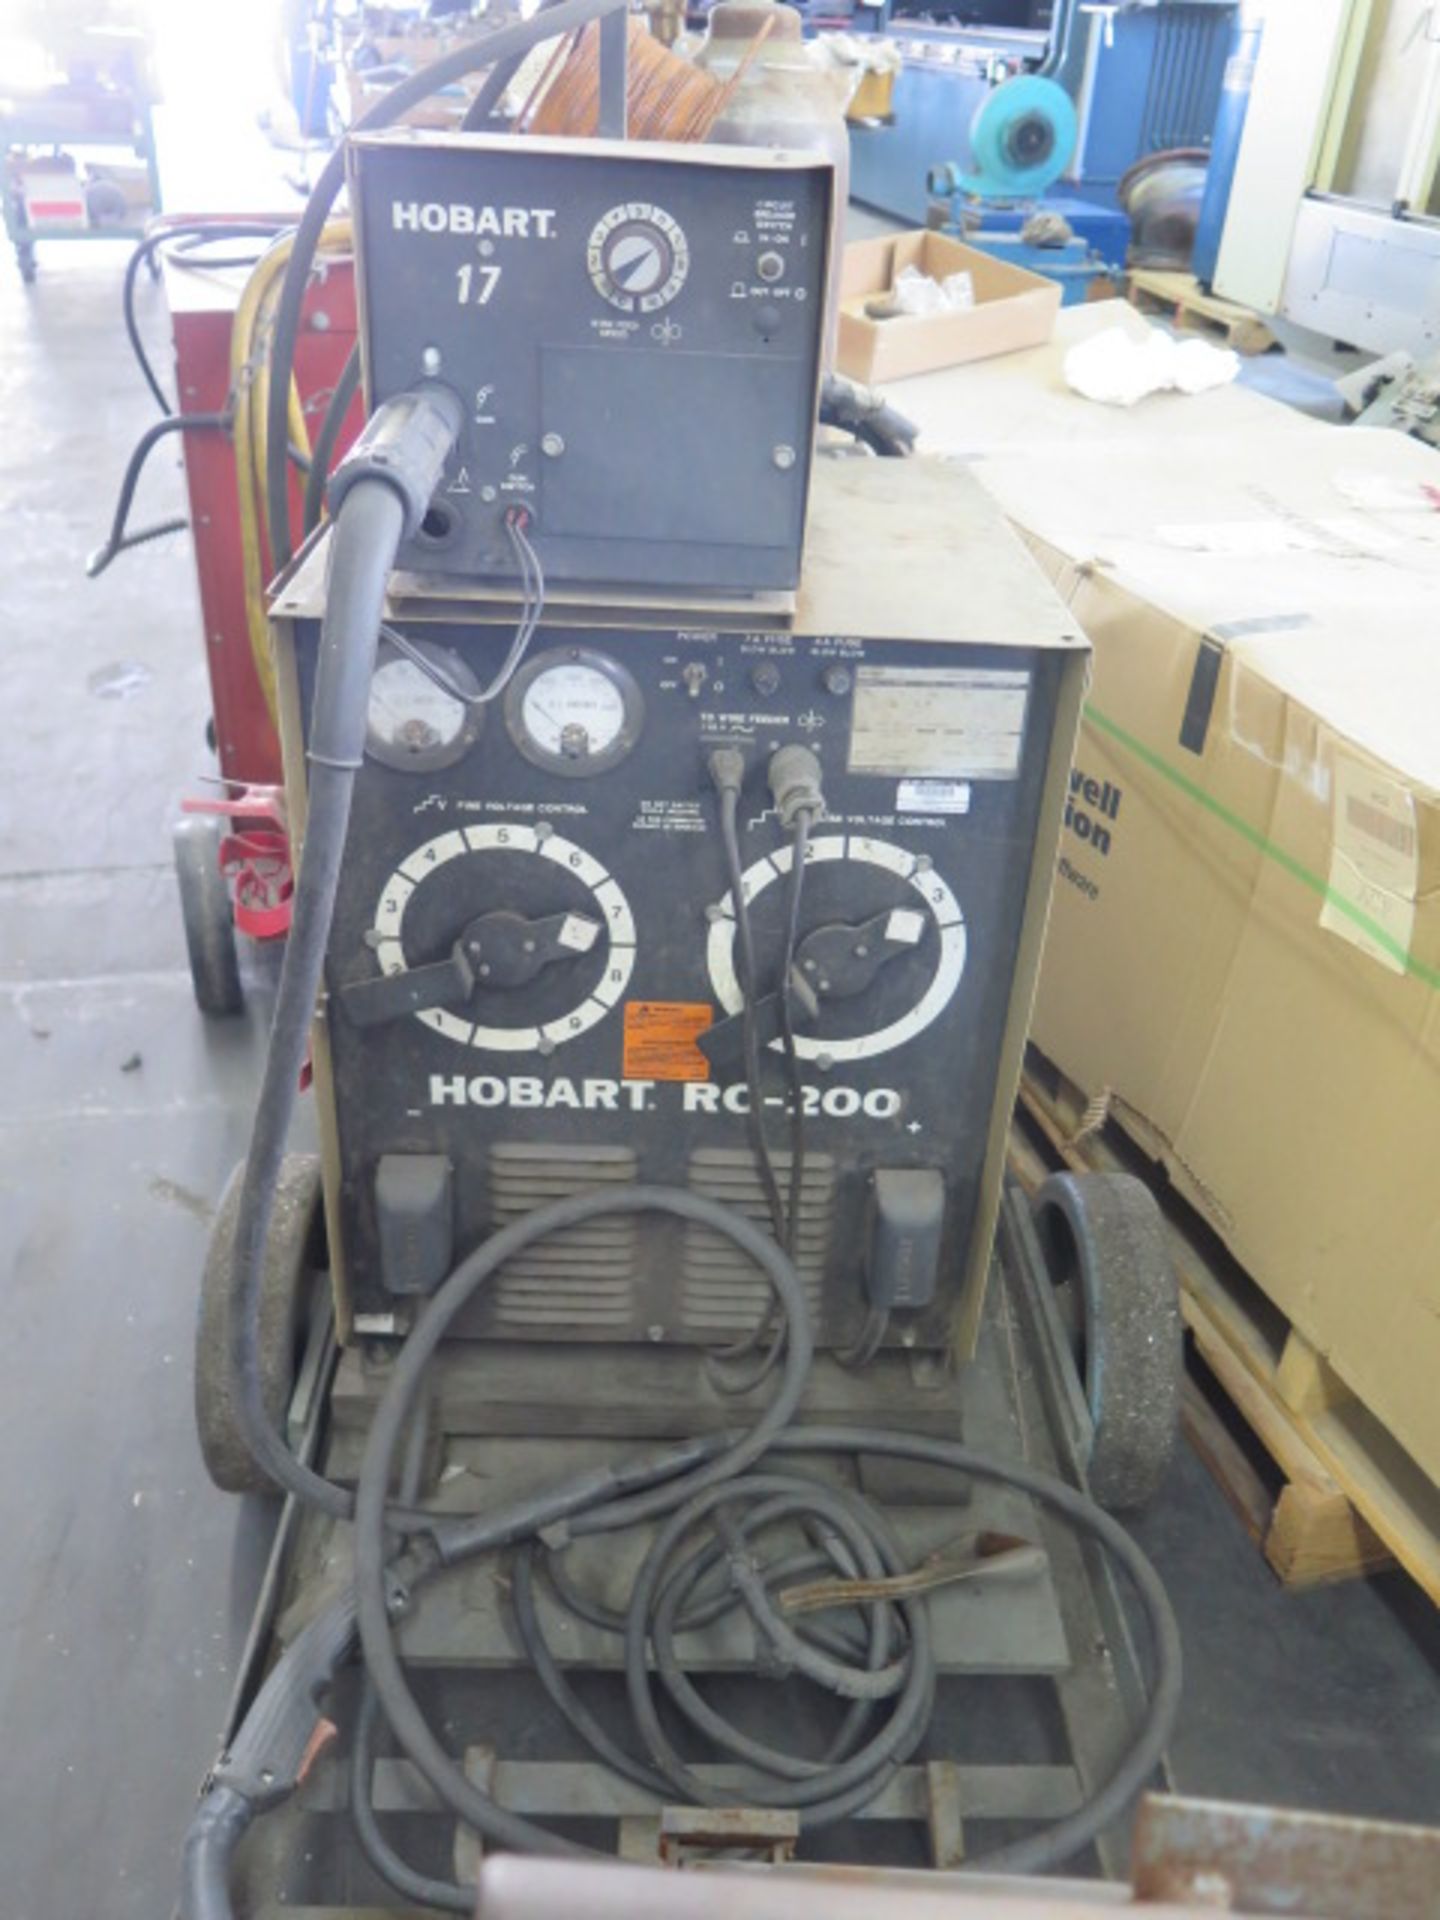 Hobart RC-200 Arc welding Power Source w/ Hobart-17 Wire Feeder